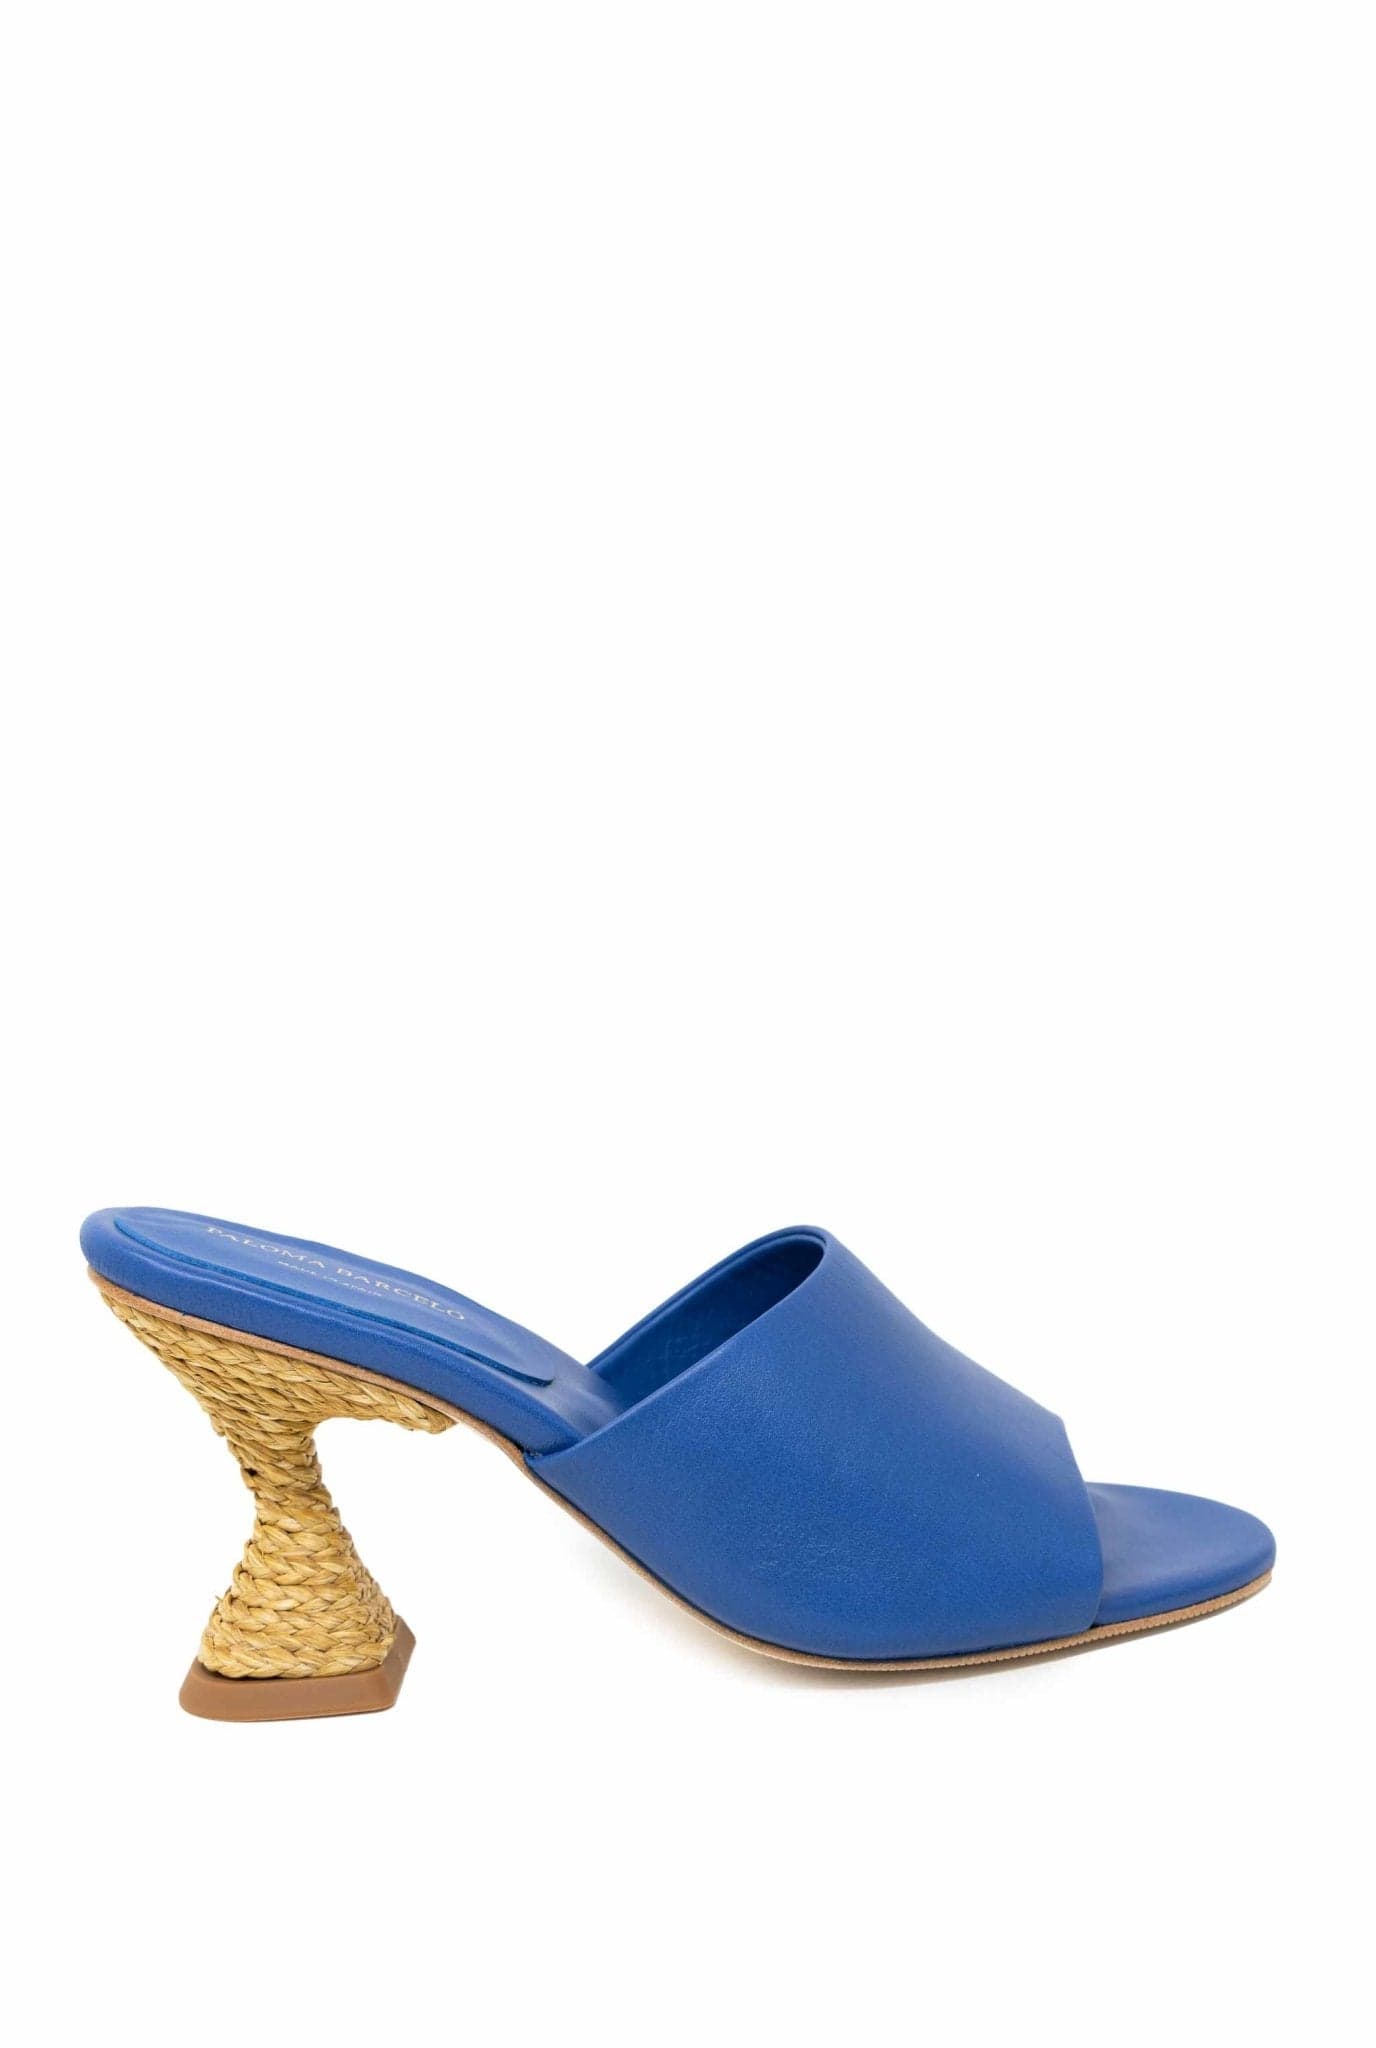 Sandalo mules brigite blu- Paloma Barcelo -Giorgioquinto